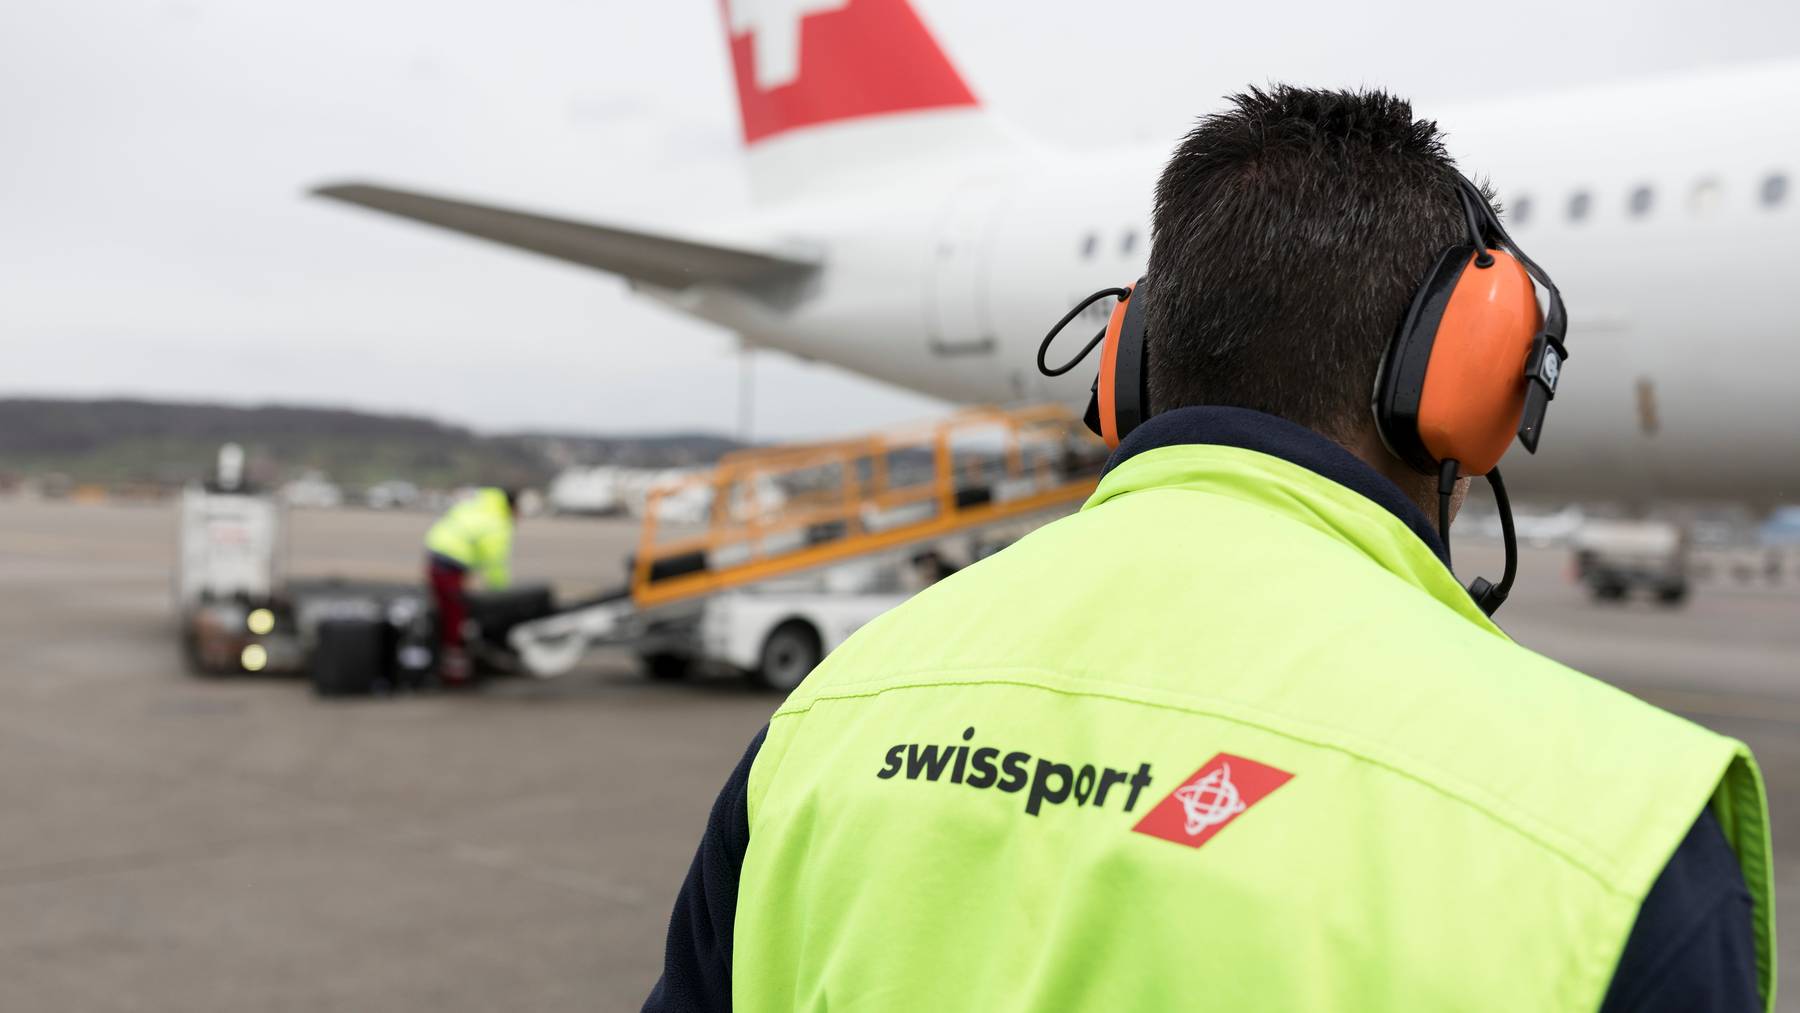 Das Unternehmen Swissport bietet Dienstleistungen für Flughäfen und Fluggesellschaften in der ganzen Welt.